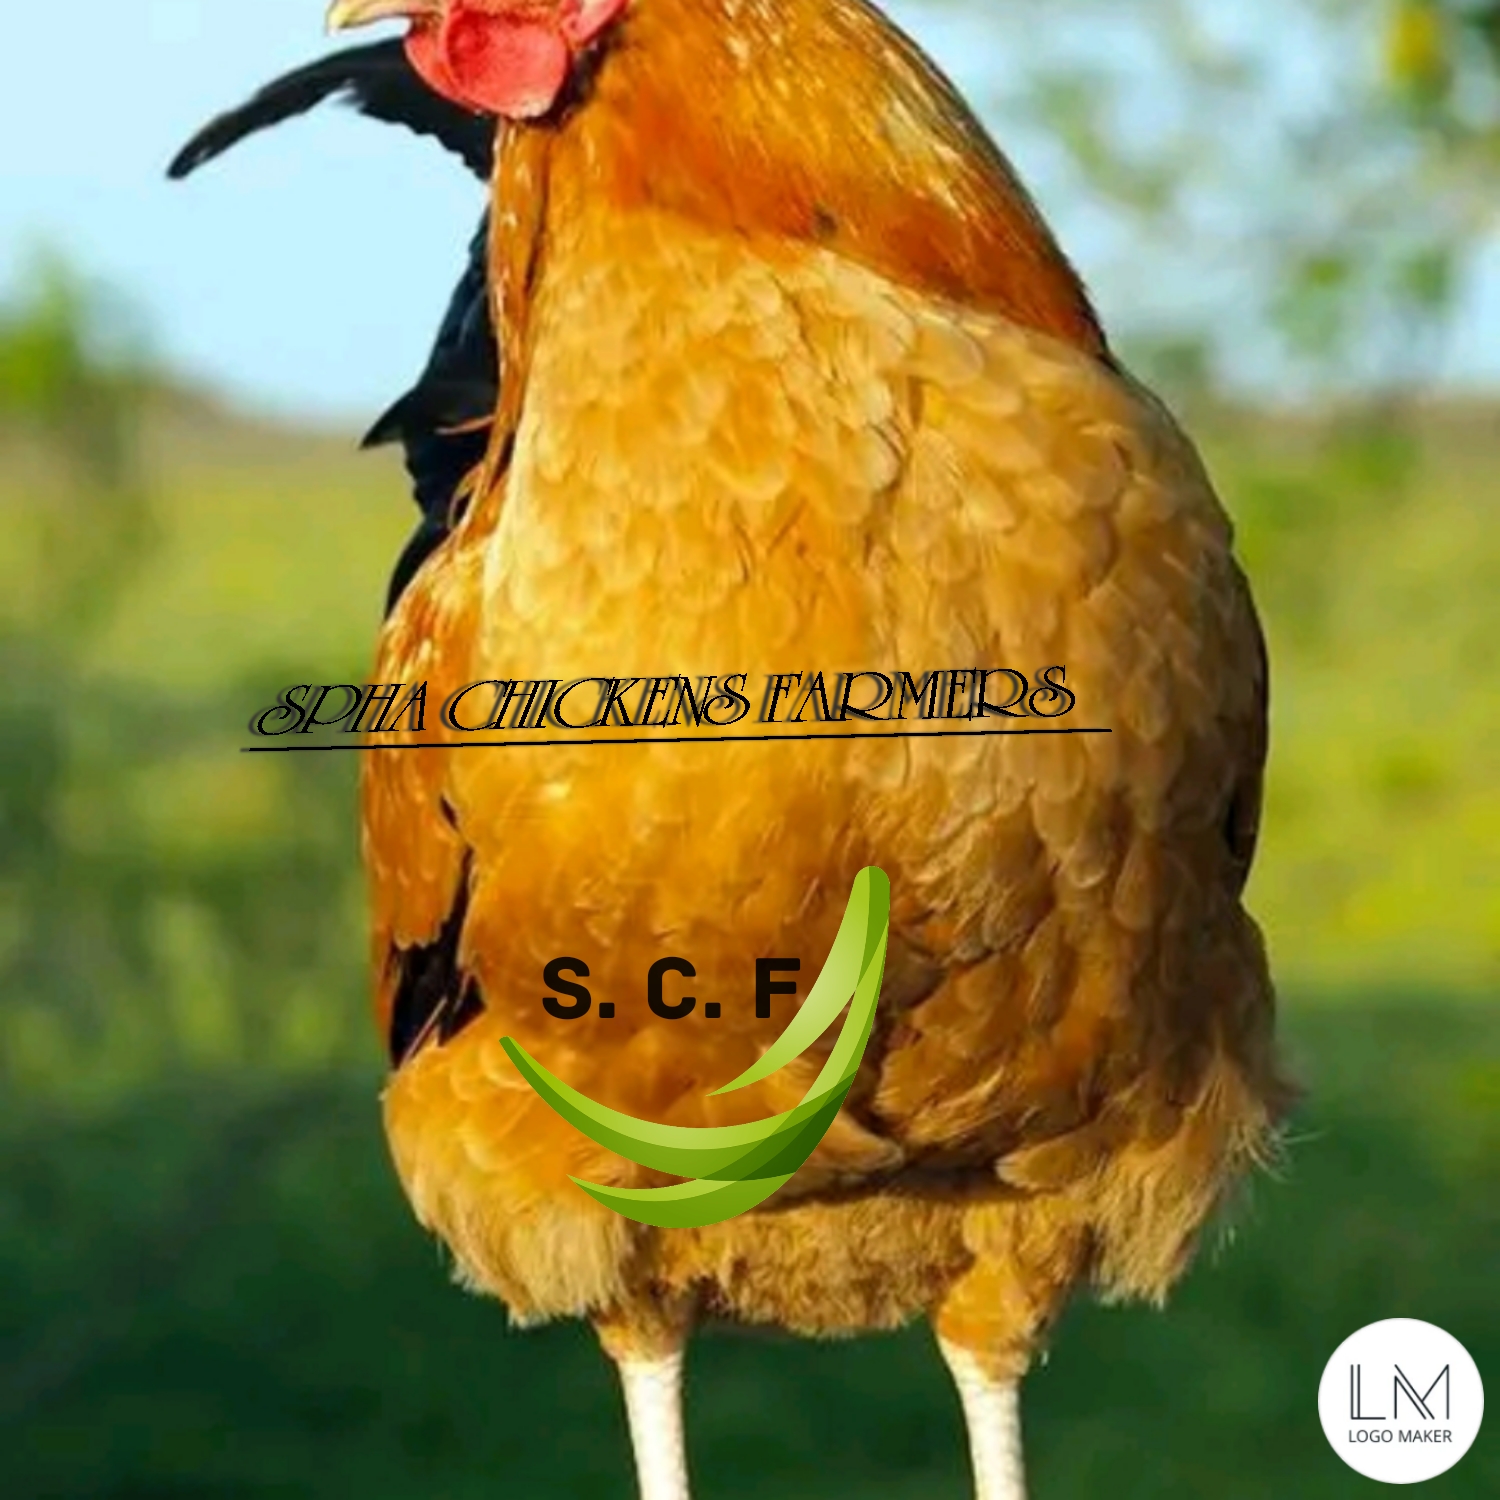 Spha chickens farmers (scf) 